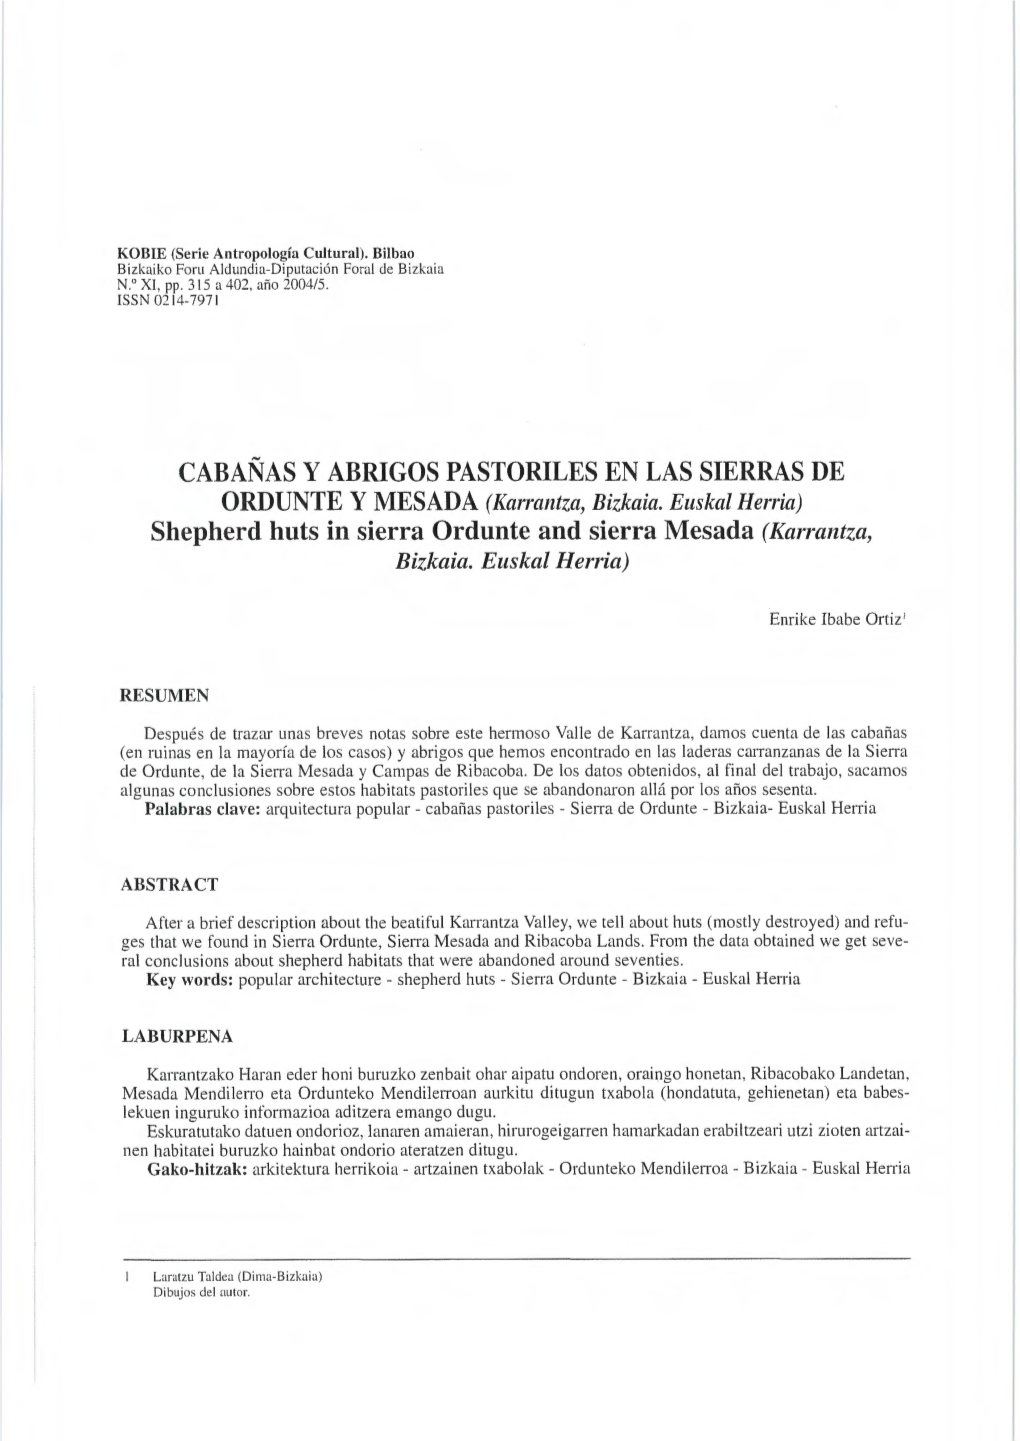 CABAÑAS Y ABRIGOS PASTORILES EN LAS SIERRAS DE ORDUNTE Y MESADA (Karrantza, Bizkaia